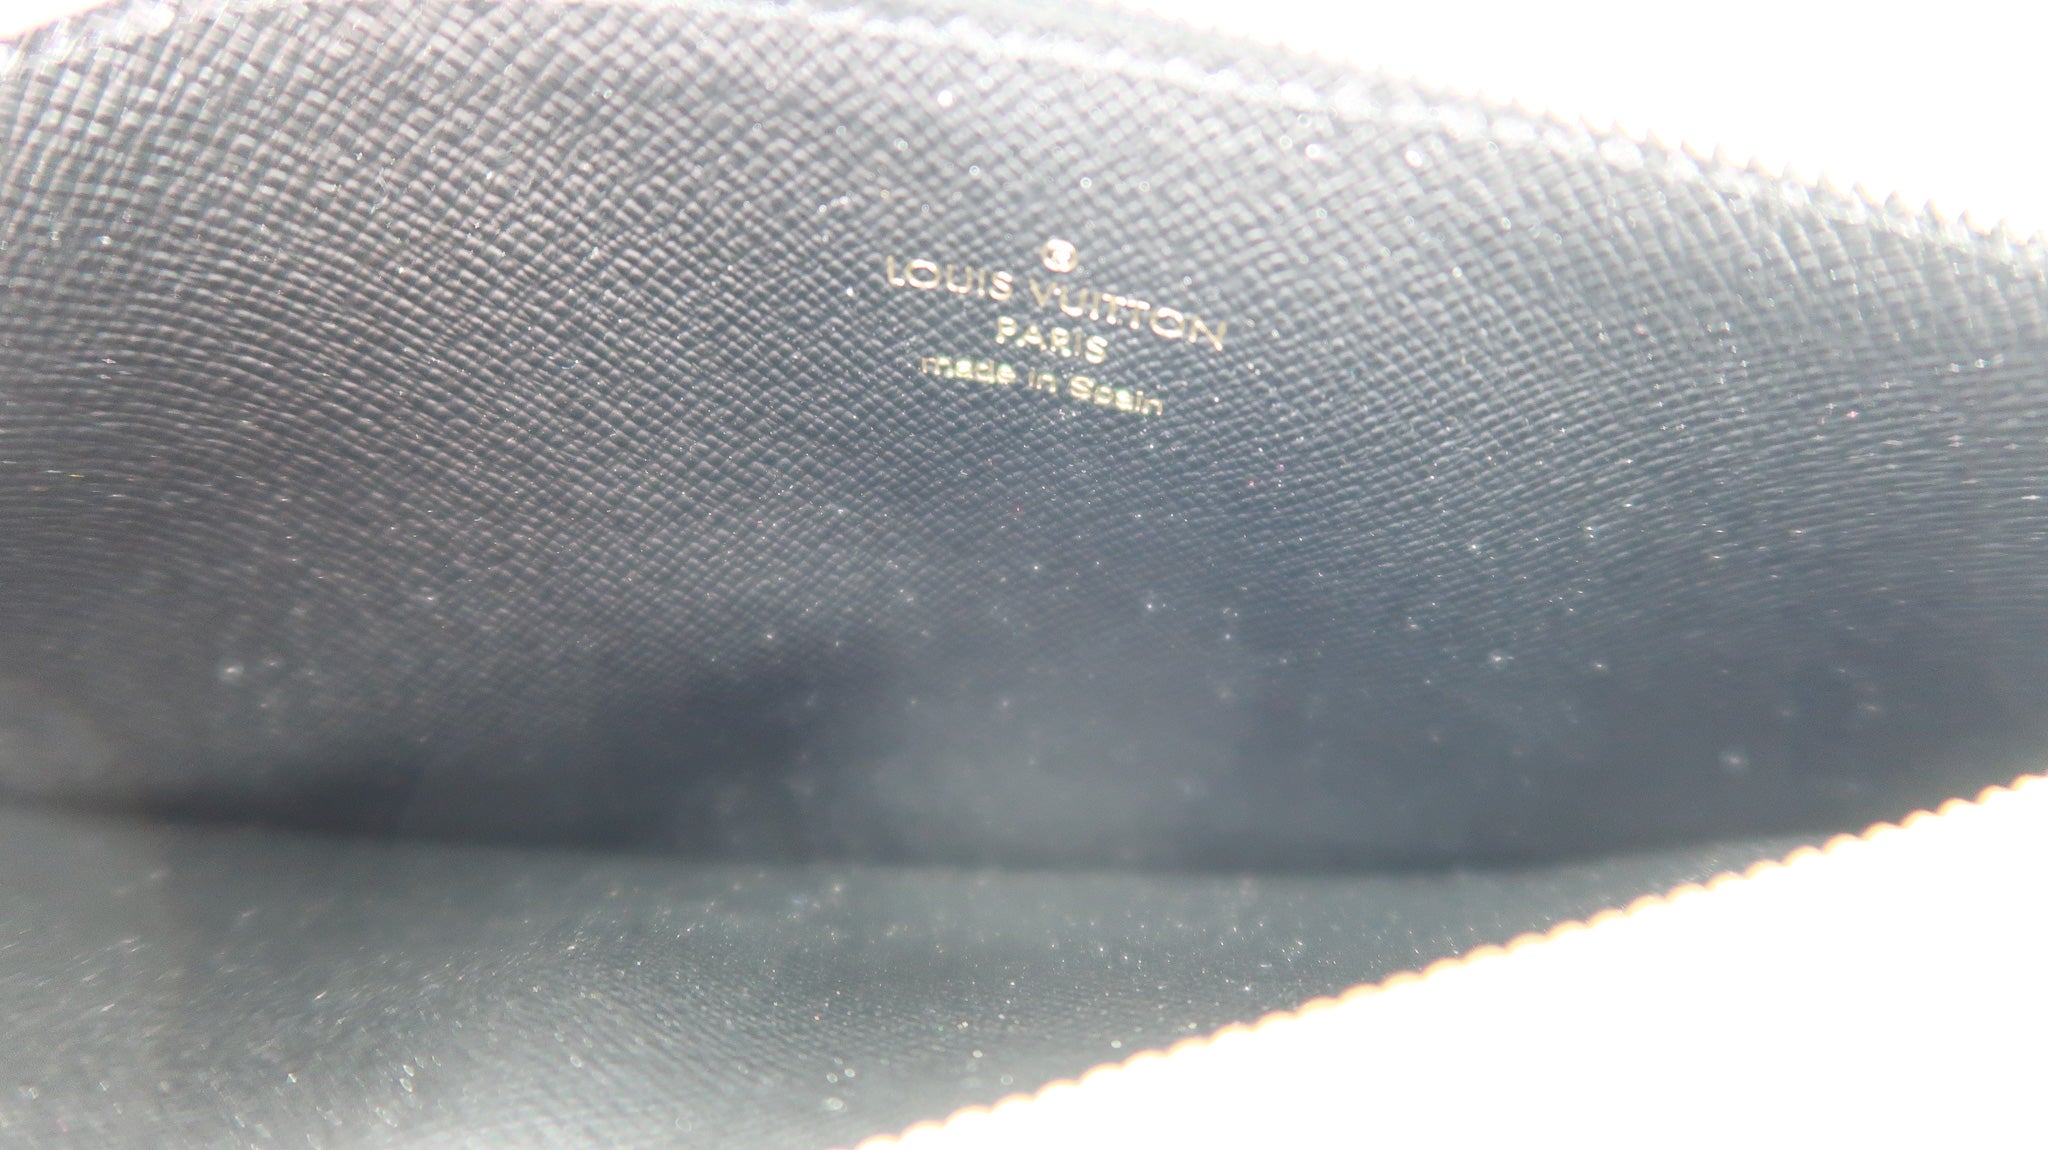 Louis Vuitton, Bags, Louis Vuitton Slim Purse Monogram Reverse